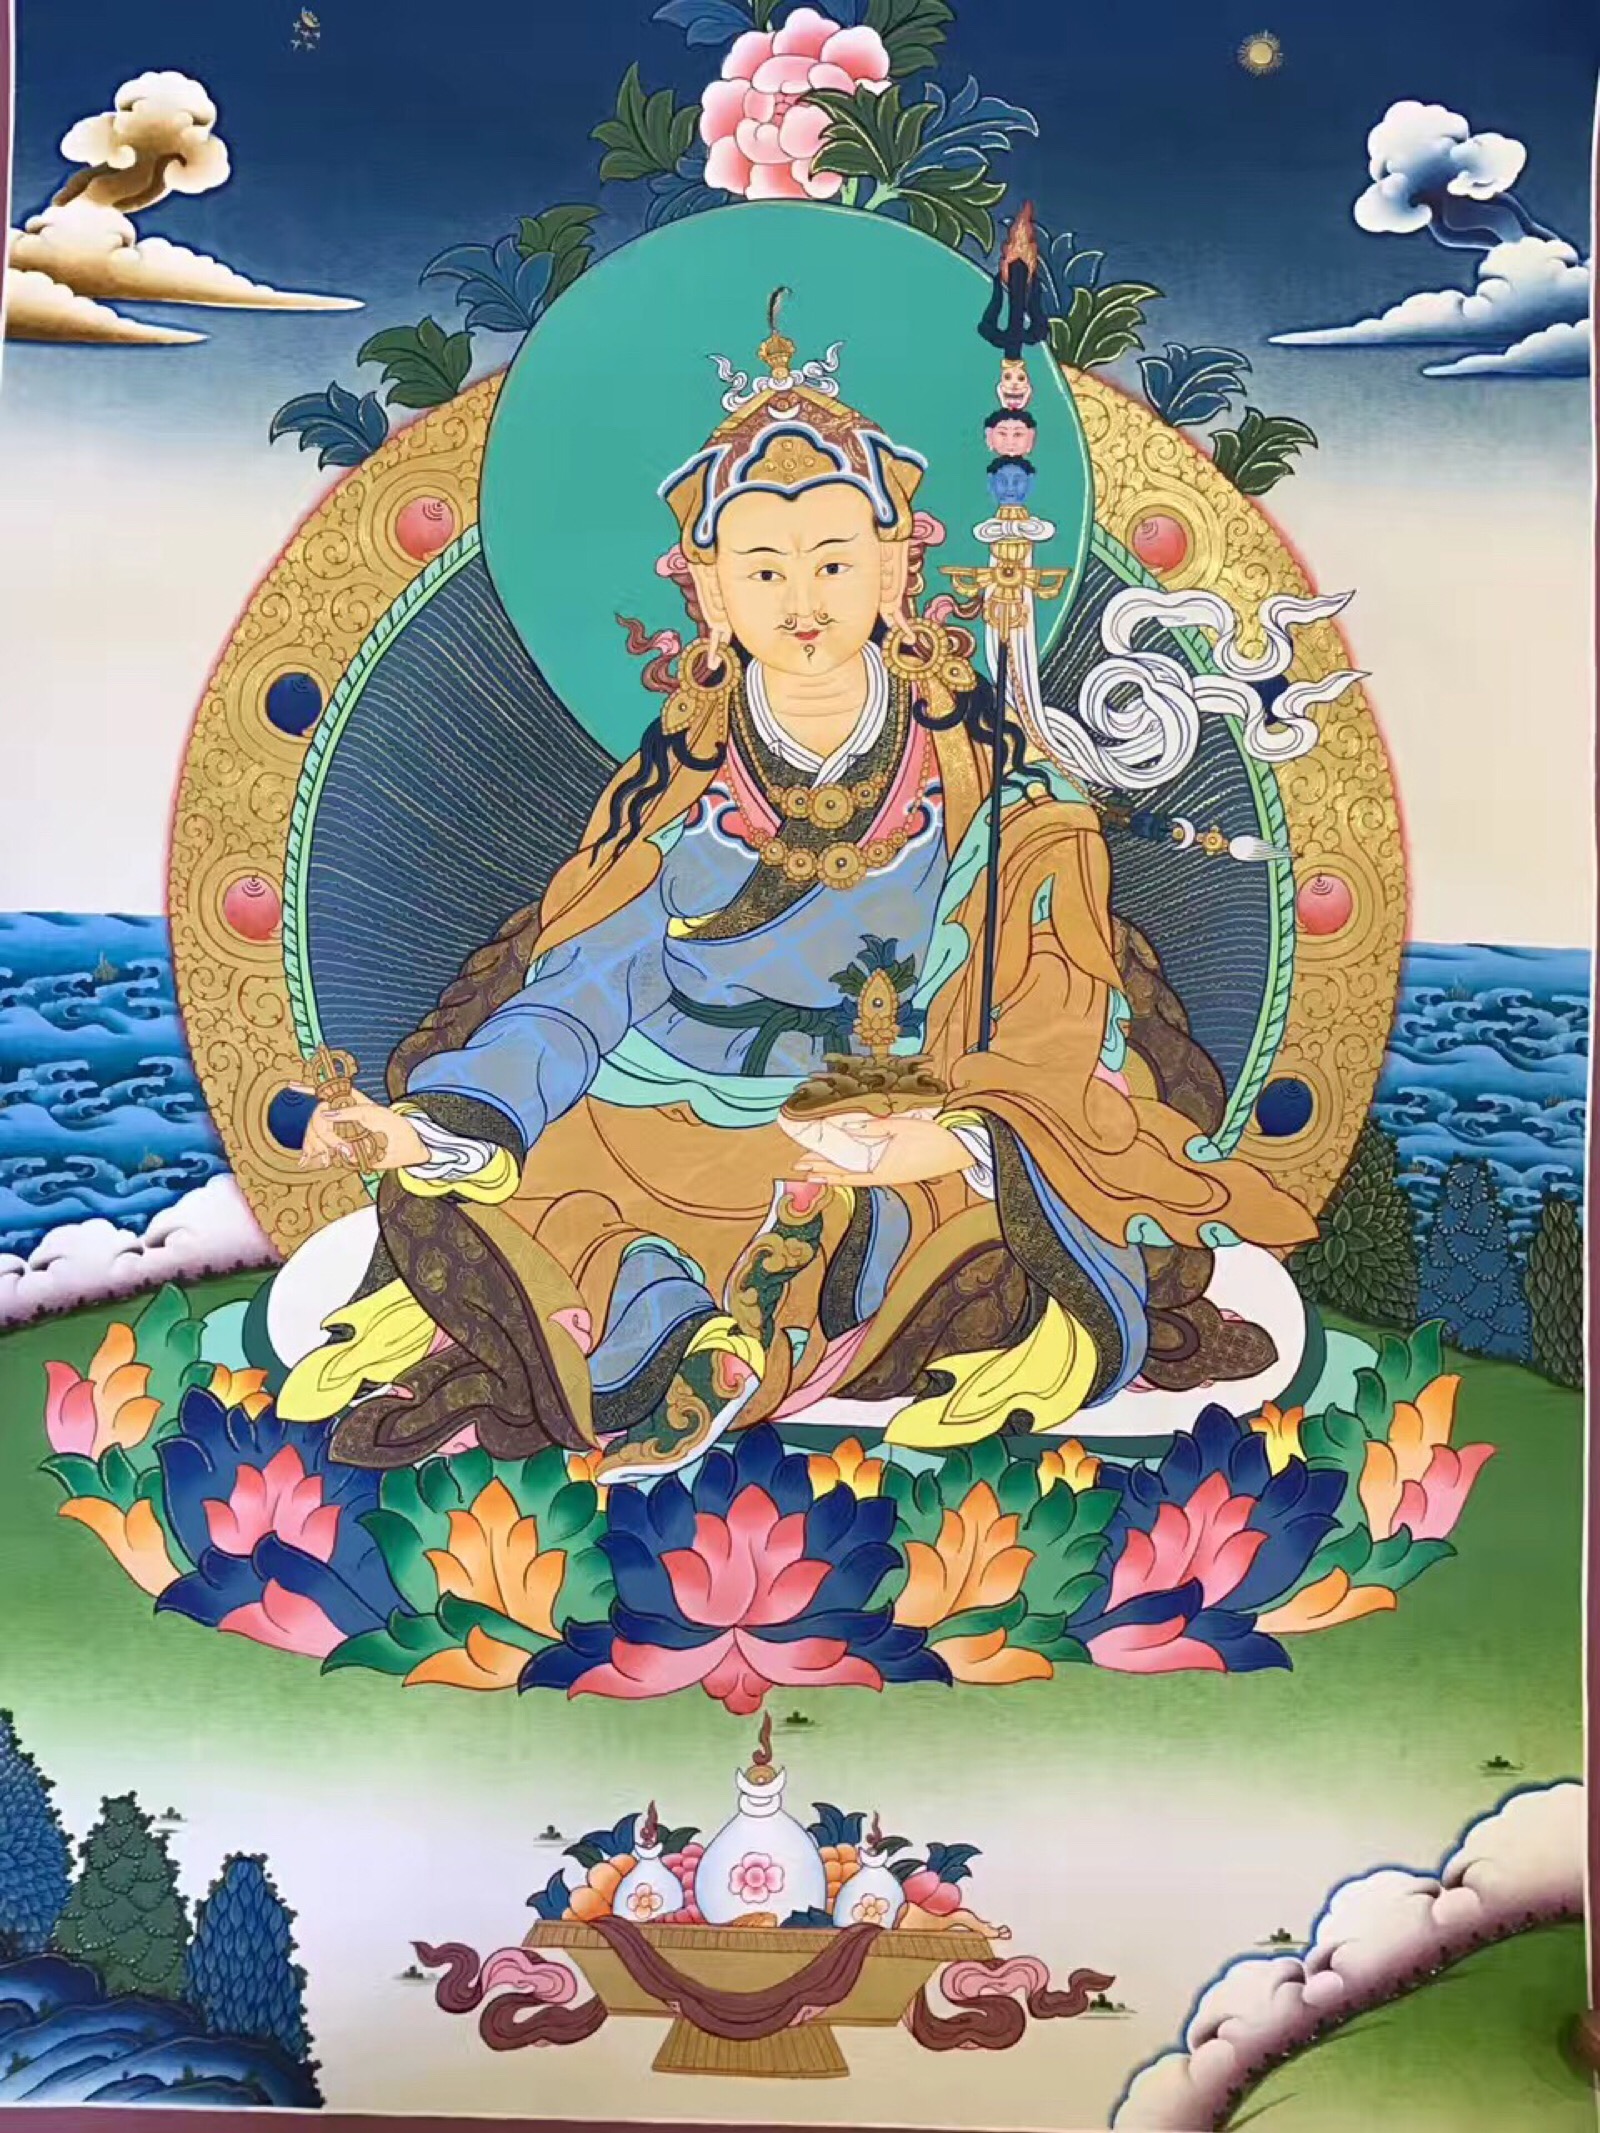 【莲花生大师唐卡】莲花生大师尊称:咕汝仁波切,是藏传佛教的开创者和